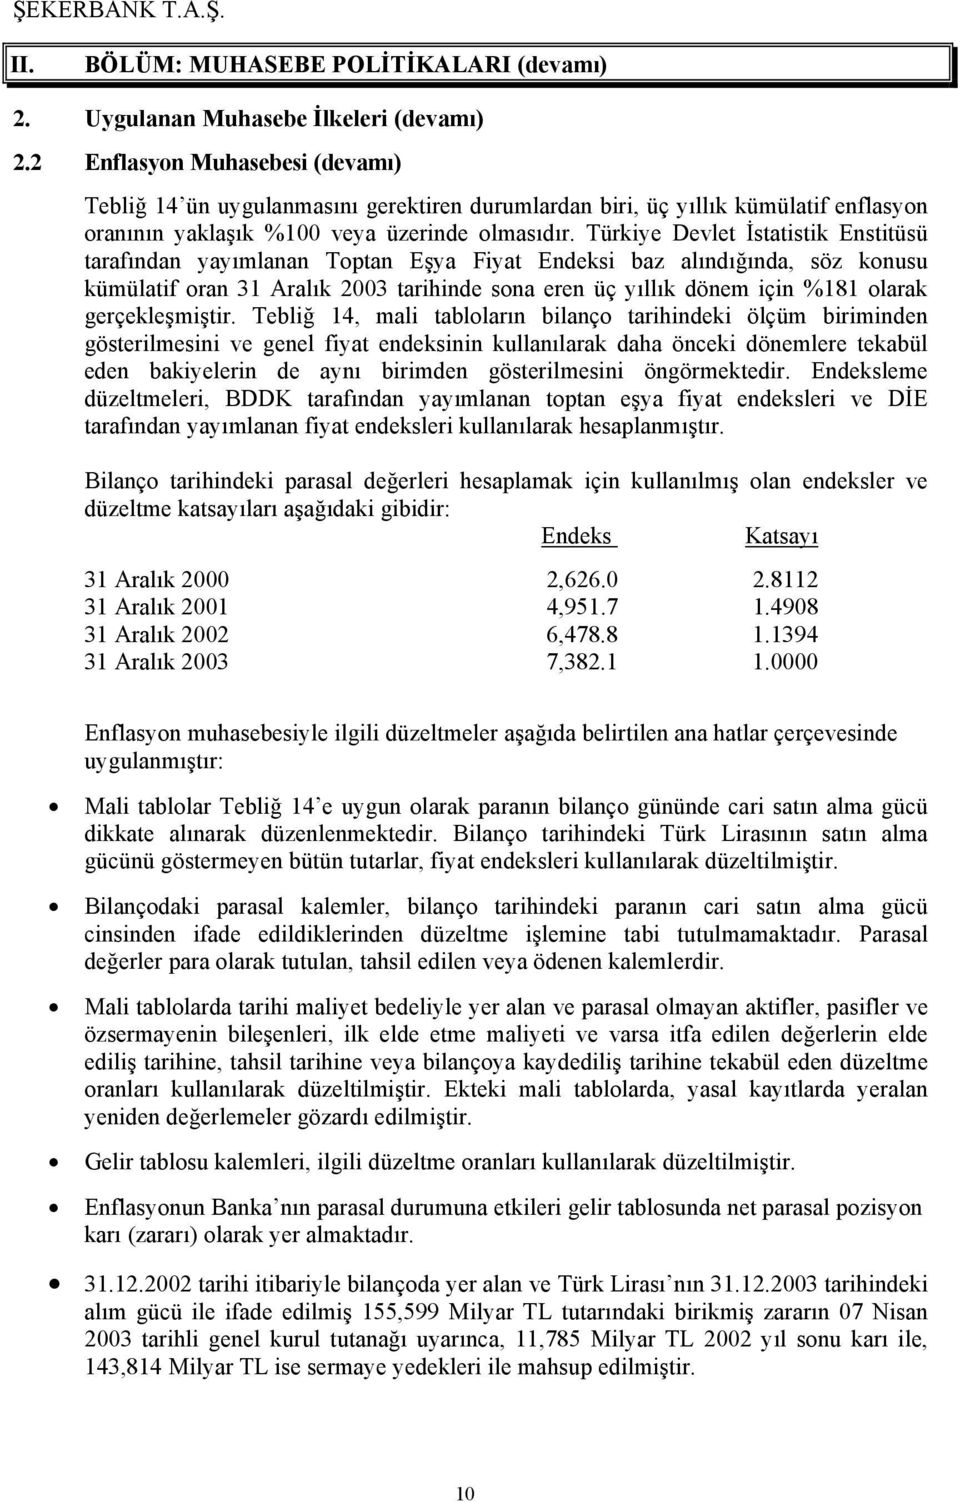 Türkiye Devlet İstatistik Enstitüsü tarafından yayımlanan Toptan Eşya Fiyat Endeksi baz alındığında, söz konusu kümülatif oran 31 Aralık 2003 tarihinde sona eren üç yıllık dönem için %181 olarak